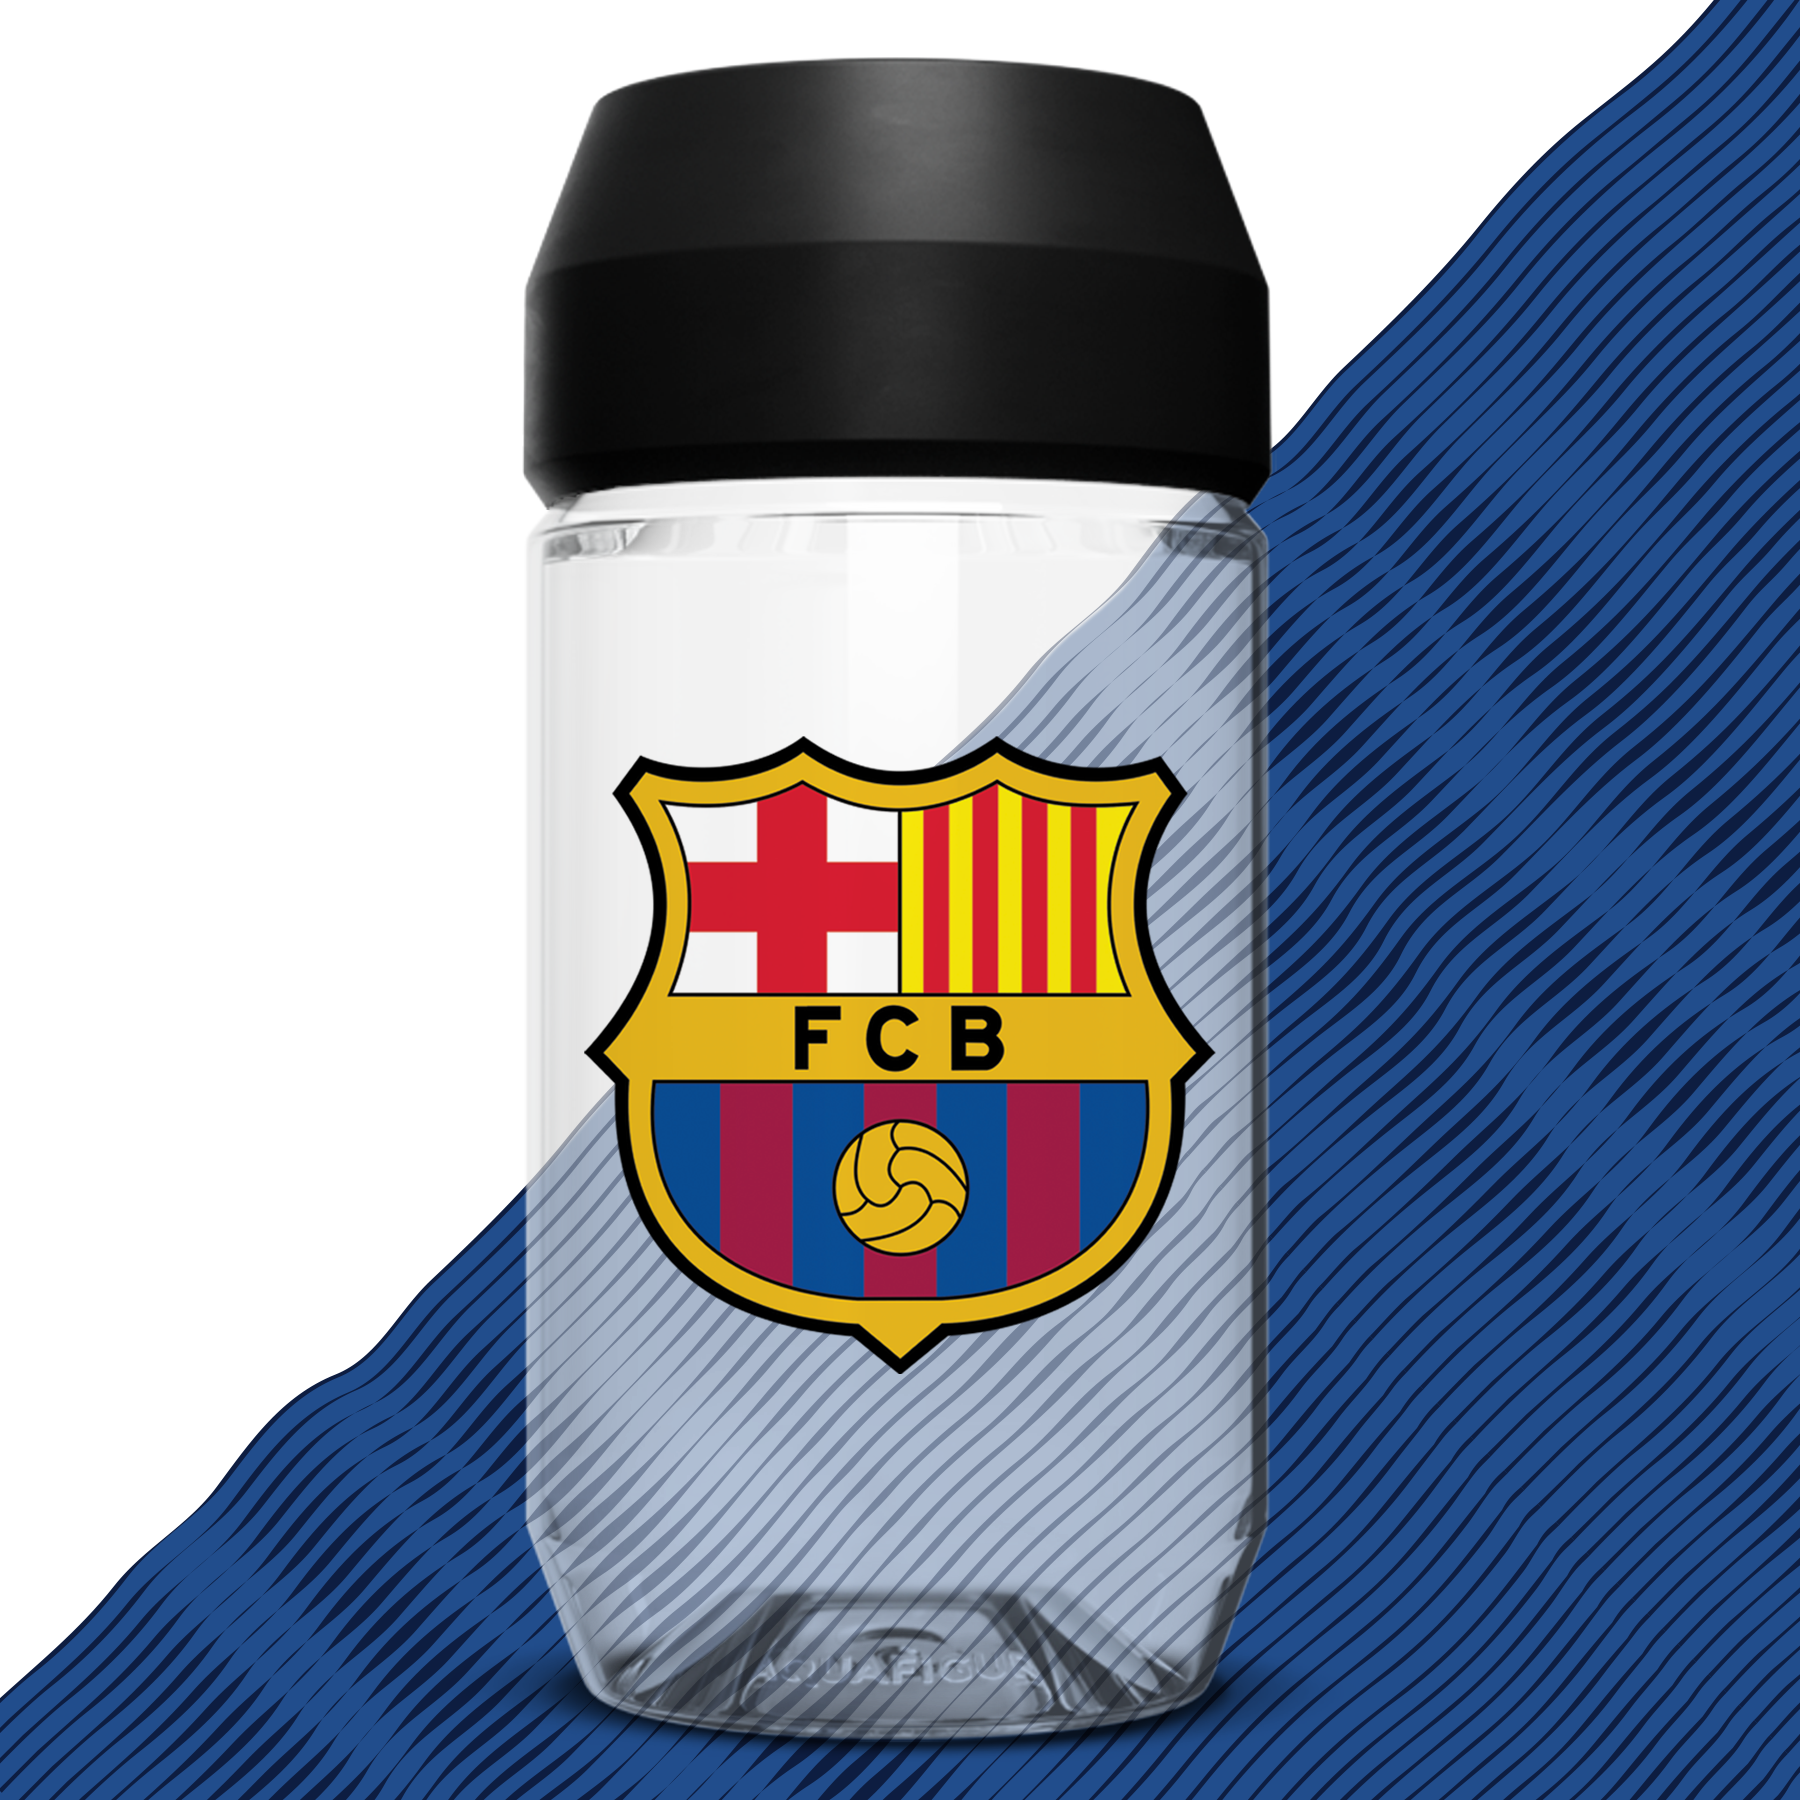 FC Barcelona herrelag - Aquafigure flaske inkludert klubblogo og 5 spillere